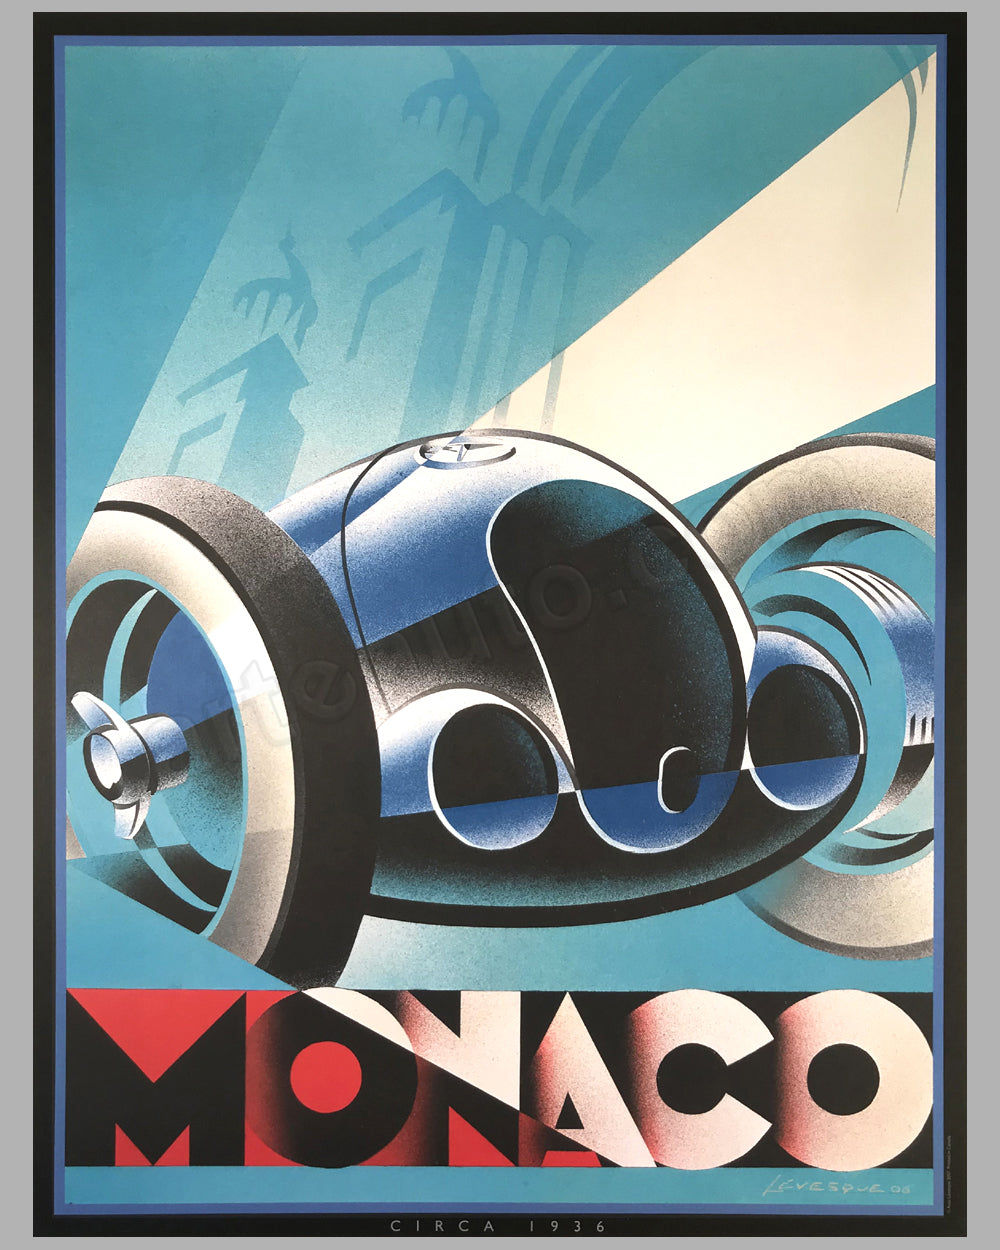 Monaco poster by Alain Lévesque